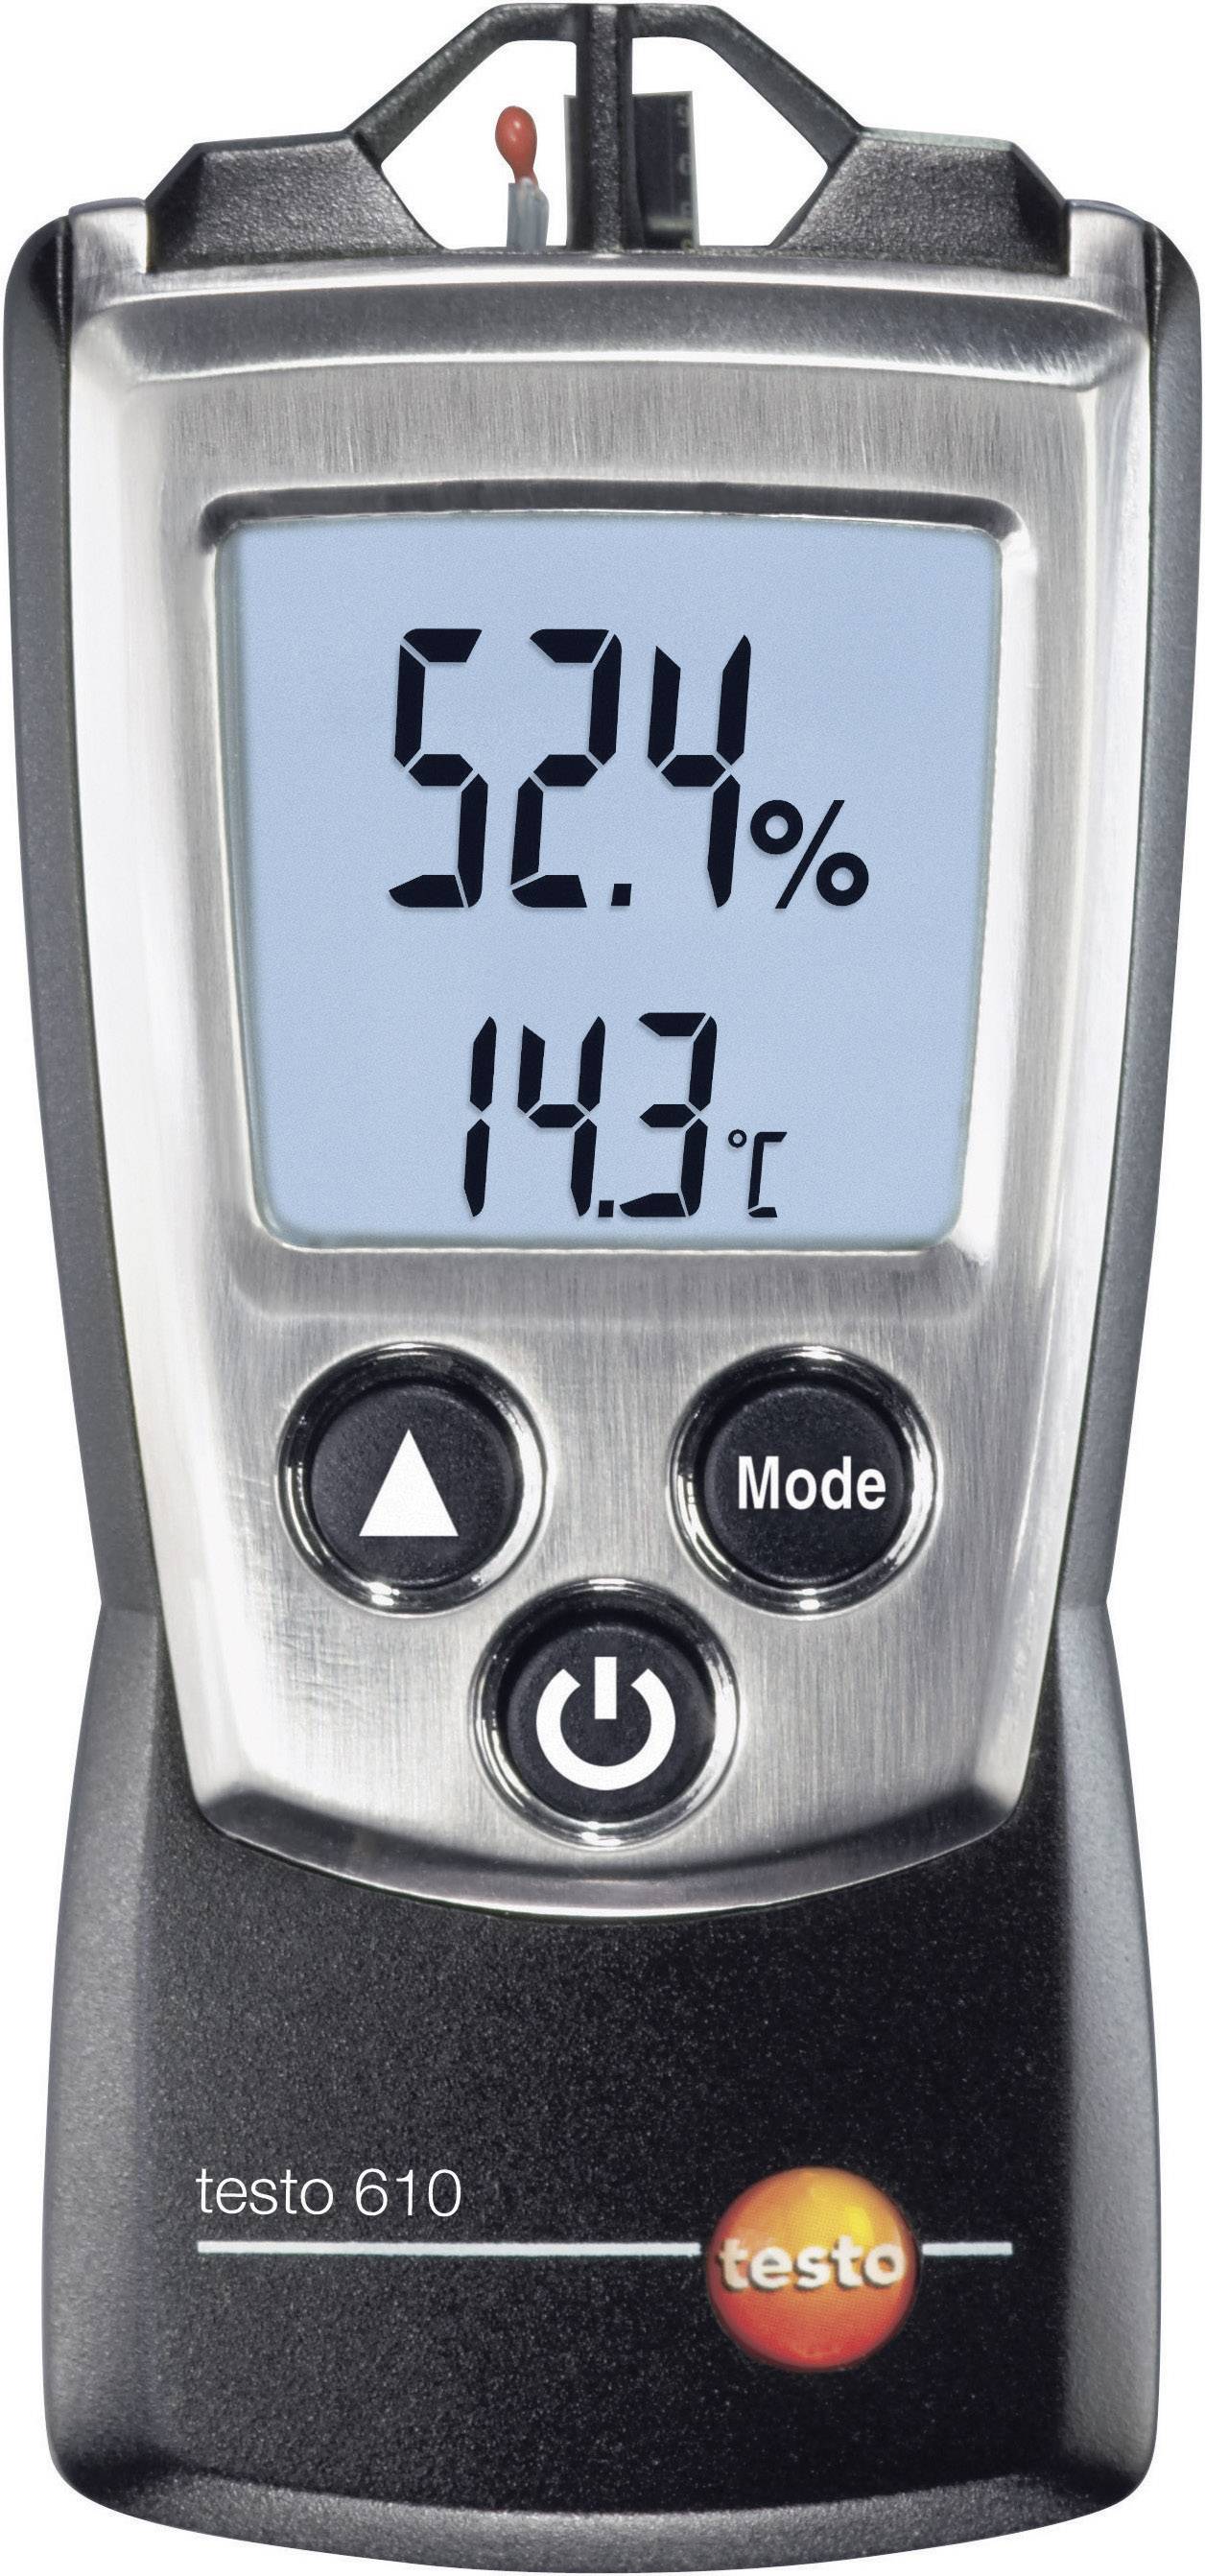 TESTO Luftfeuchtemessgerät (Hygrometer) testo 610 0 % rF 100 % rF Kalibriert nach: Werksstandard